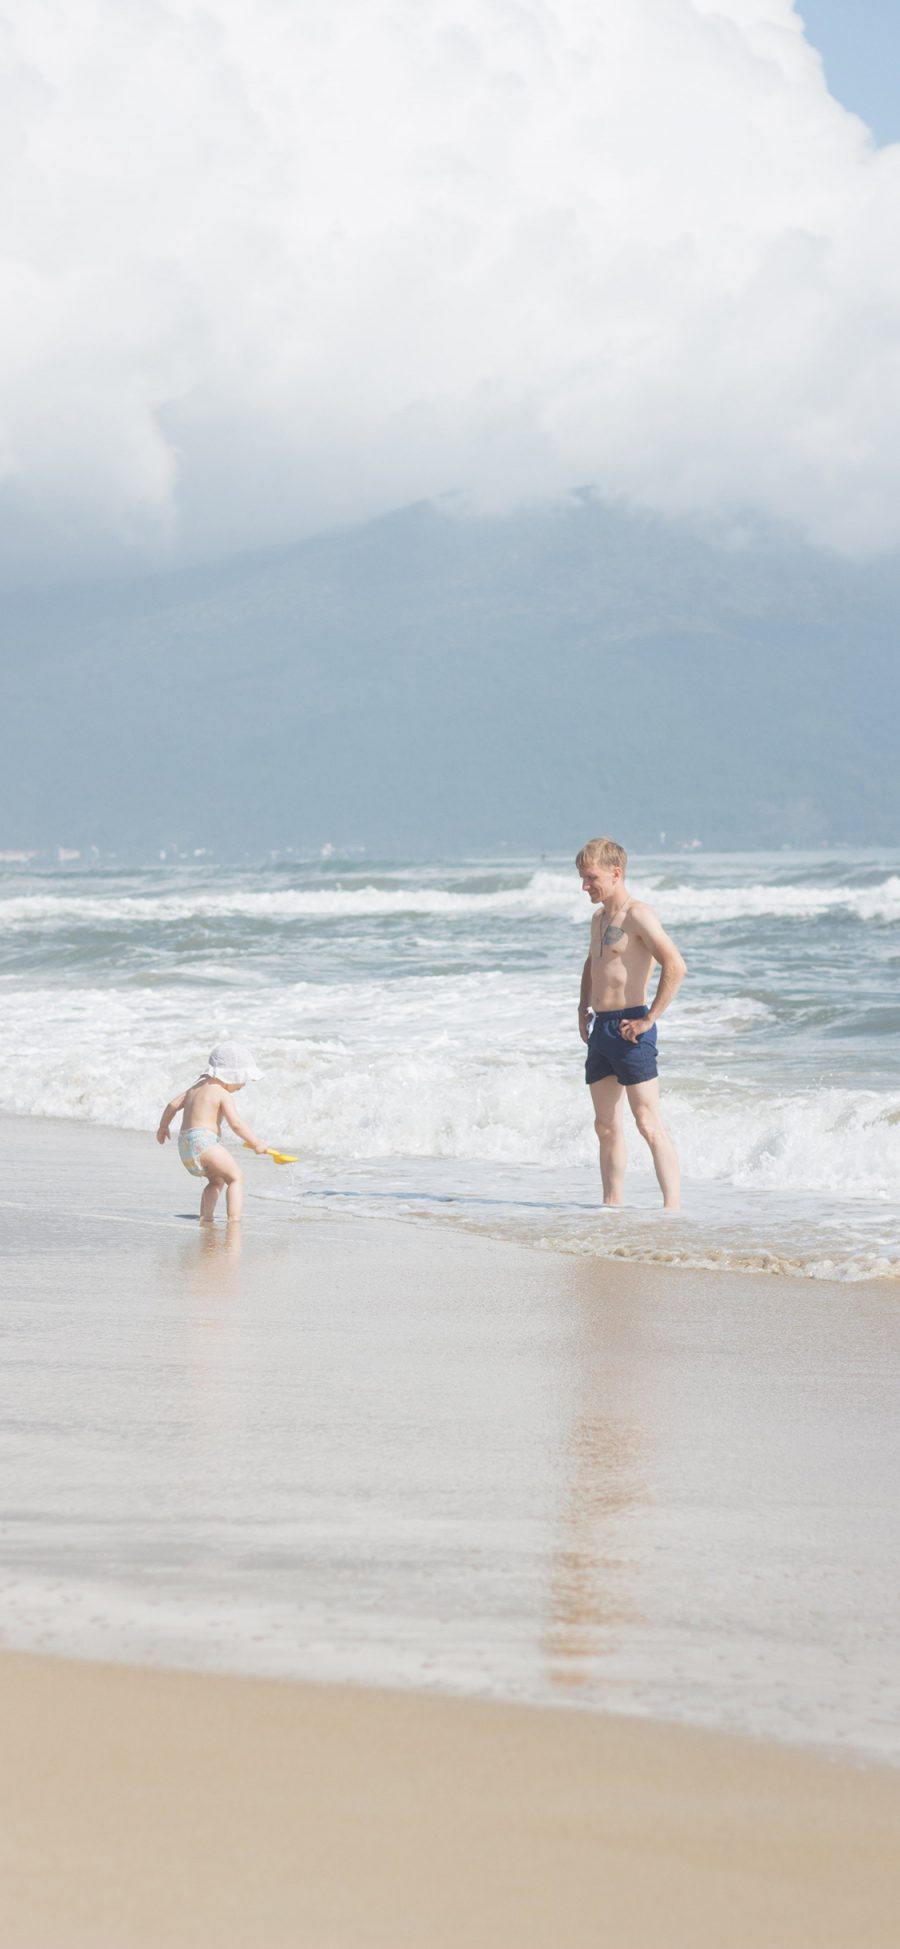 [2436×1125]海滩 亲子 游玩 海浪 沙滩 苹果手机壁纸图片